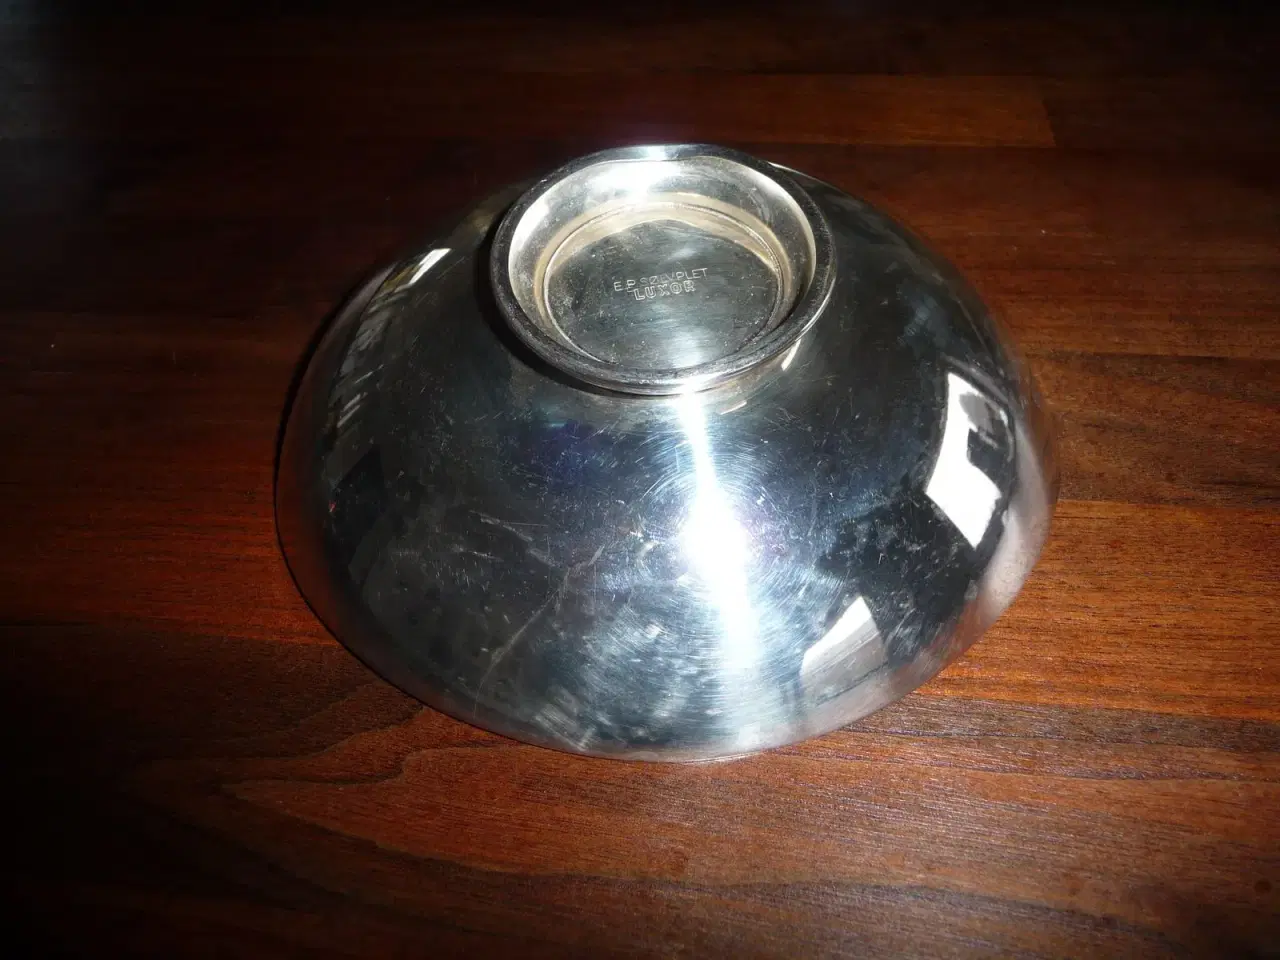 Billede 2 - sølv plet skål, lidt oval, 2 spis kanter